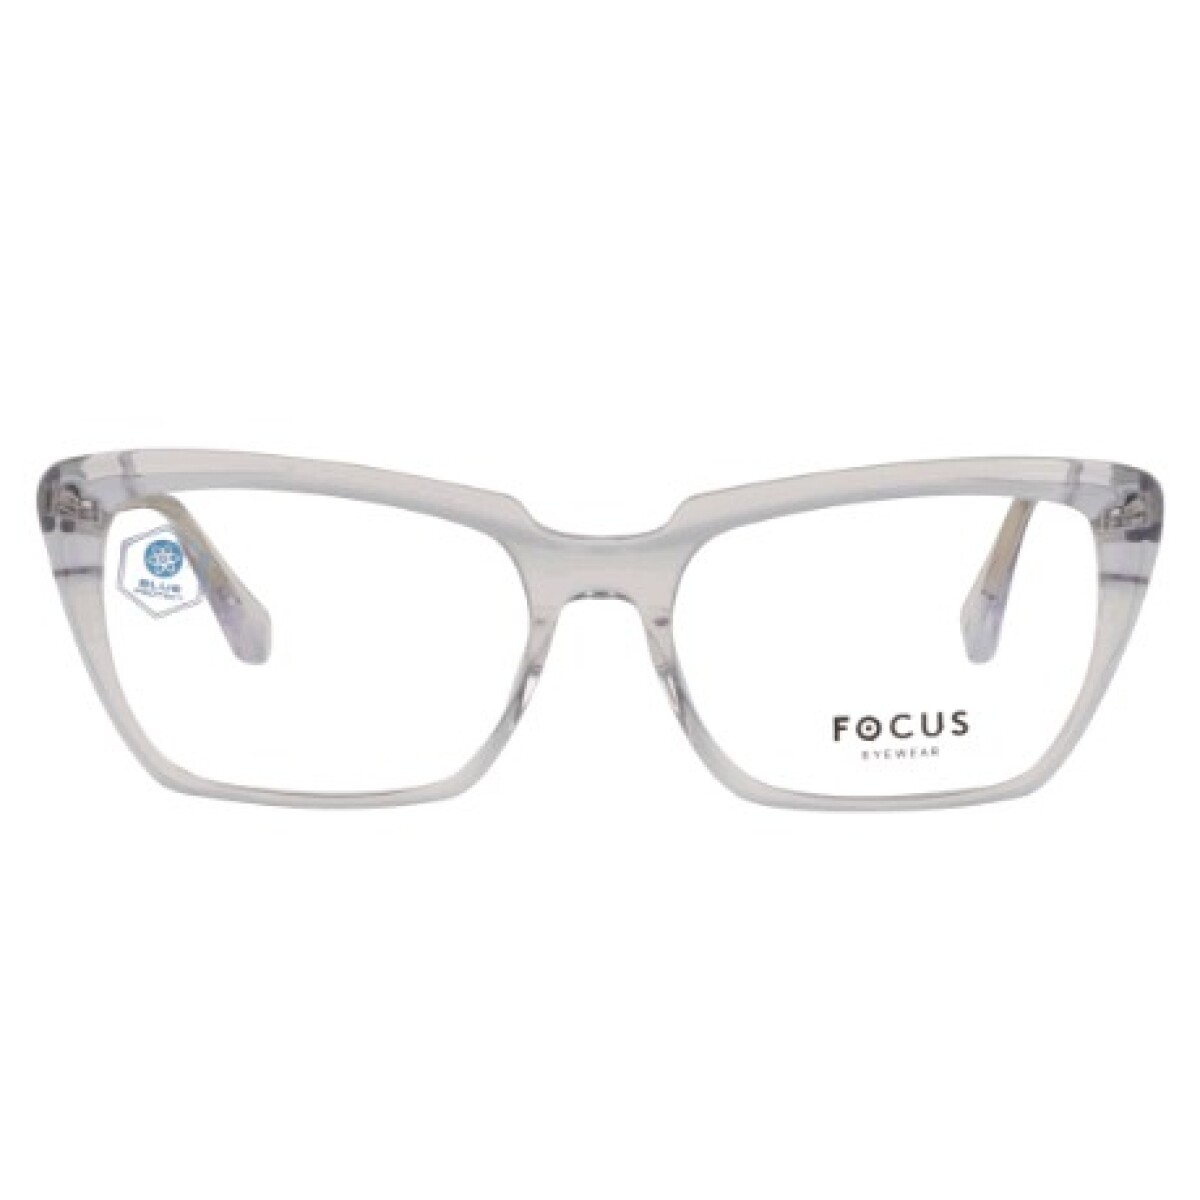 Focus Premium 380 Cristal 